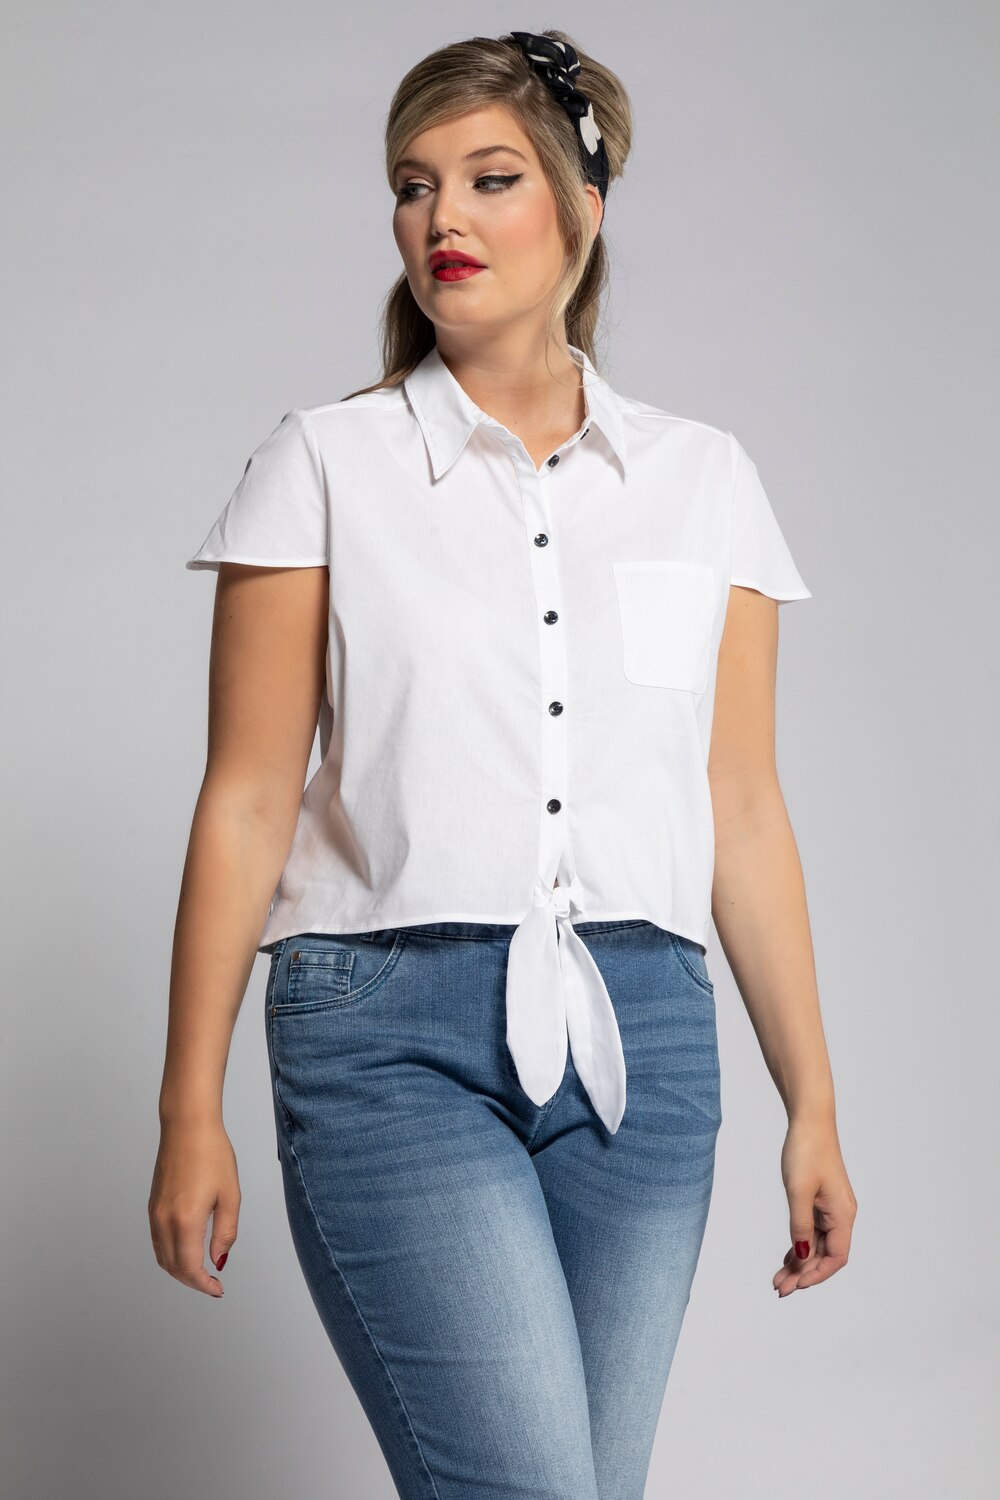 Grote Maten blouse, Dames, wit, Maat: 50/52, Katoen/Synthetische vezels, Ulla Popken